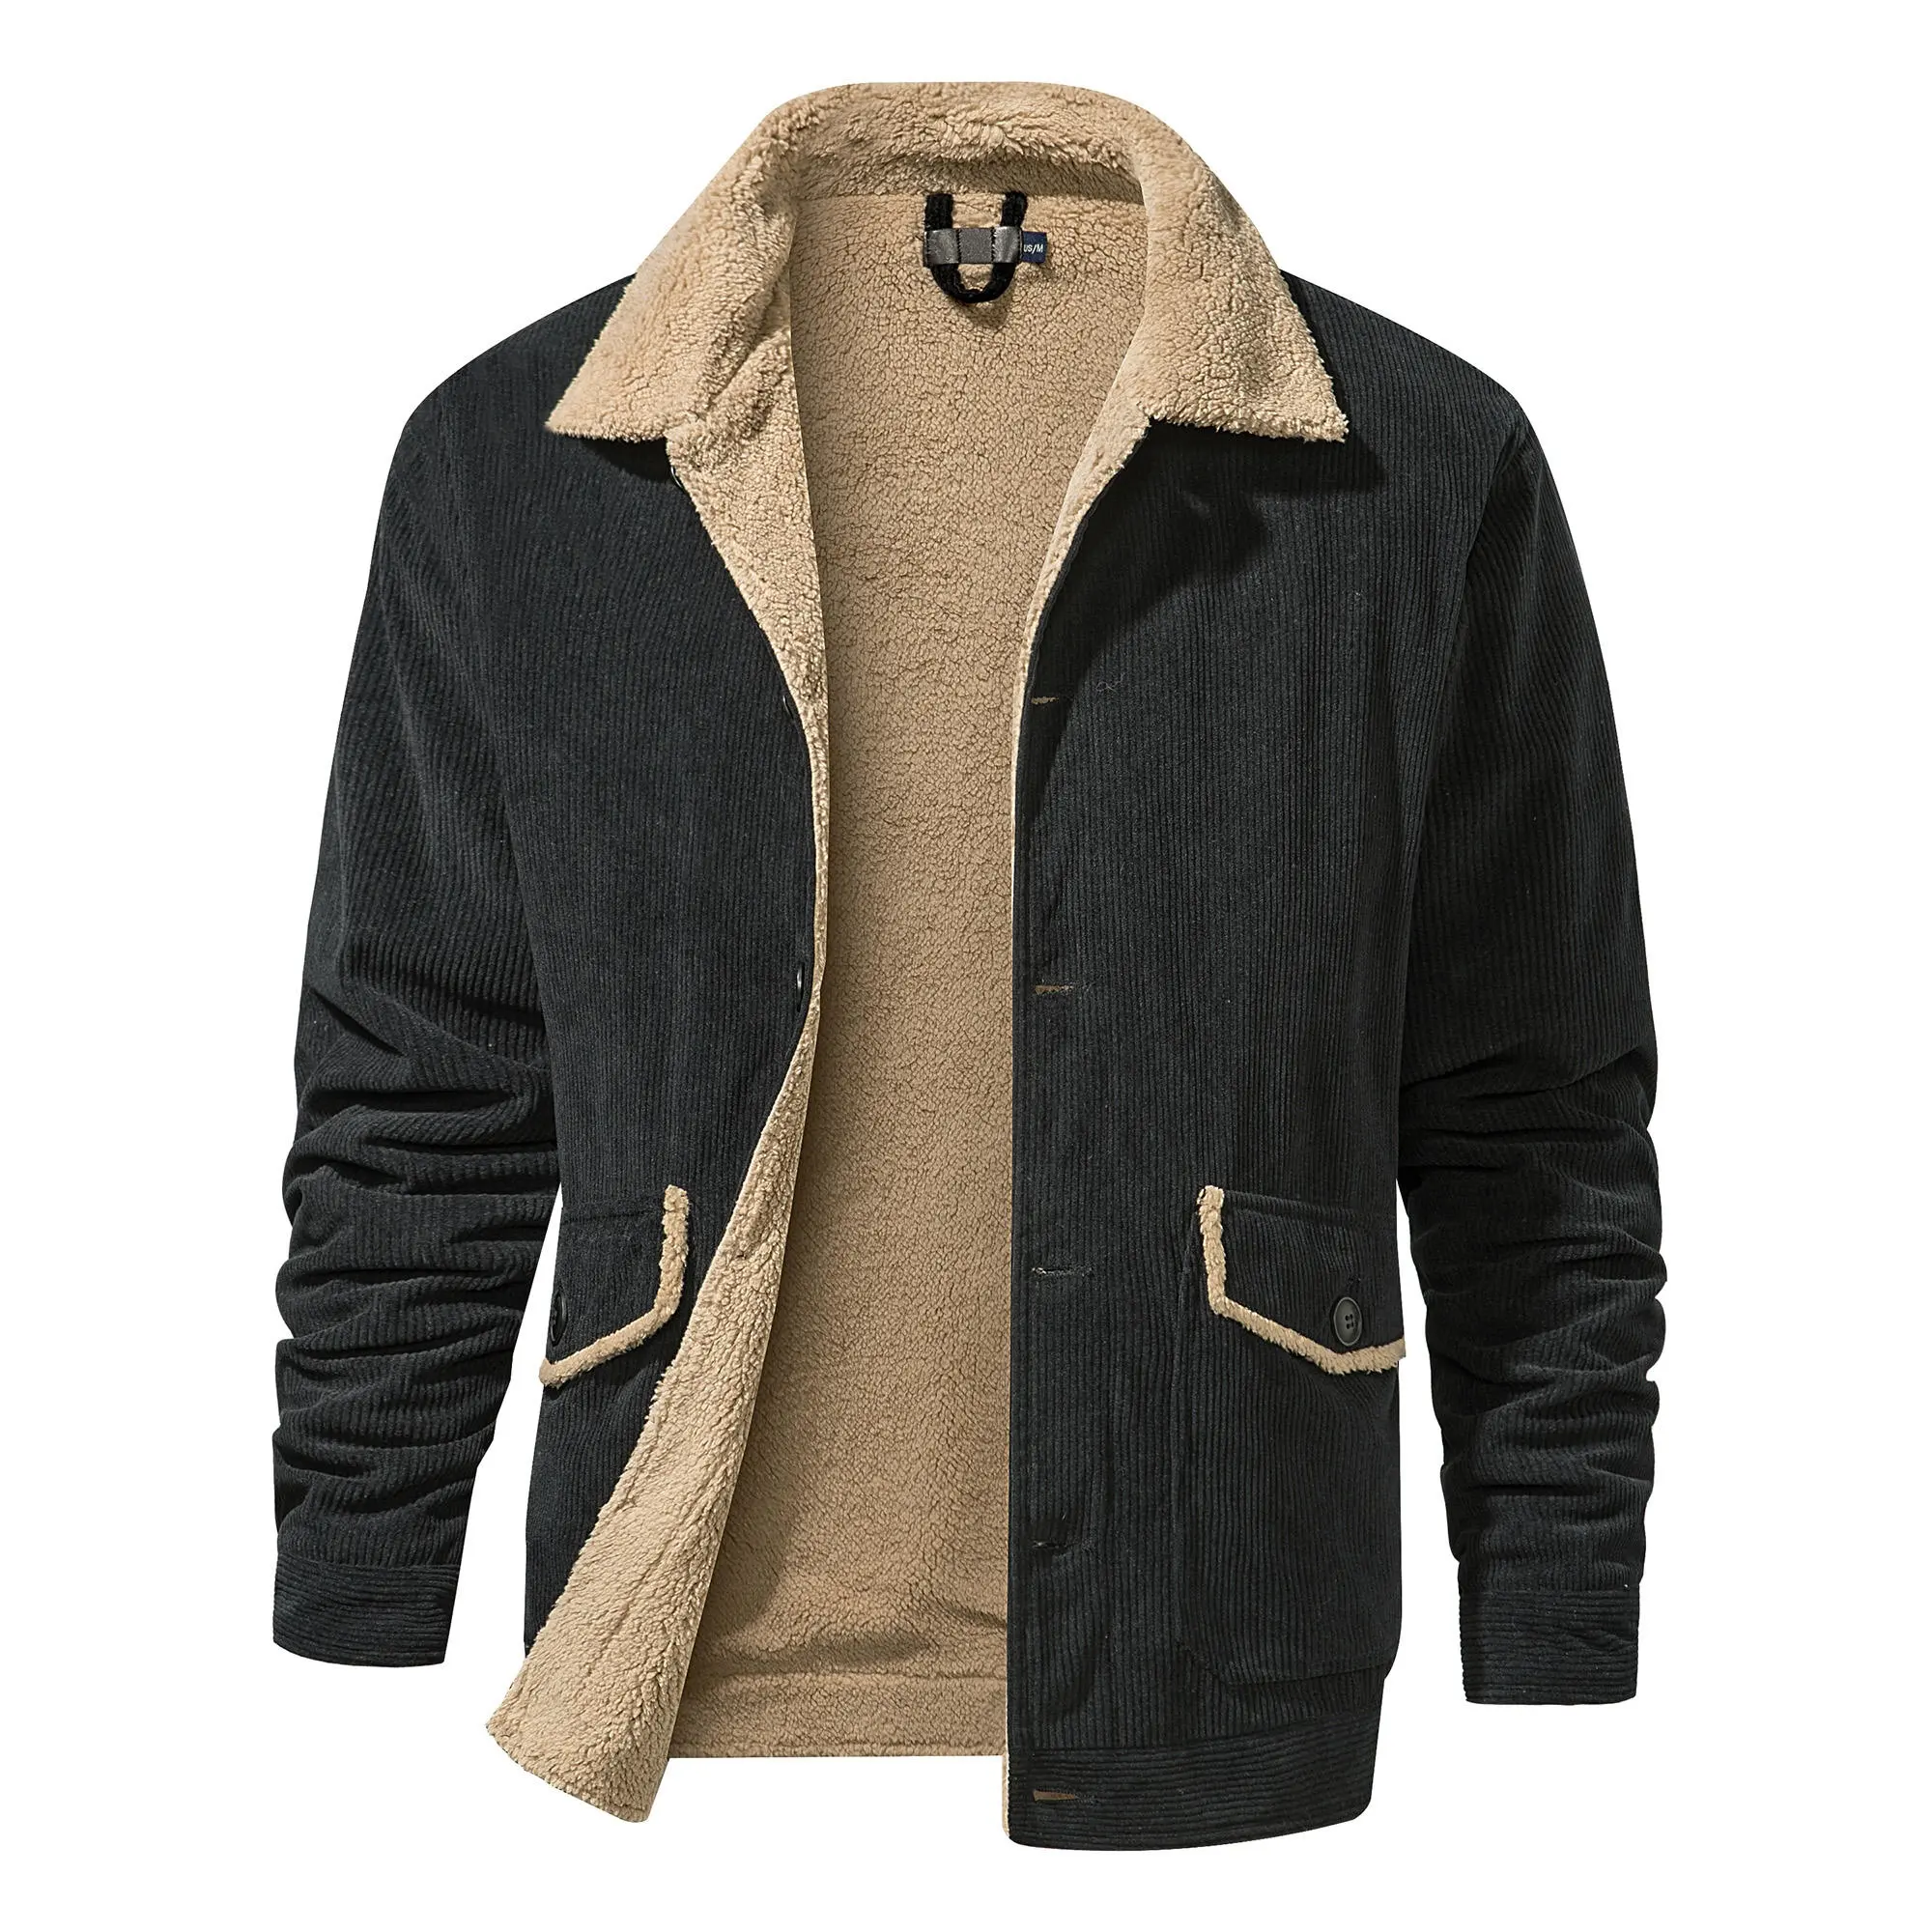 निर्माता उच्च गुणवत्ता OEM कस्टम कॉरडरॉय विंटेज आकस्मिक लंबी बांह की कमीज प्लस आकार पुरुषों की ऊन फैशन सर्दियों के लिए जैकेट